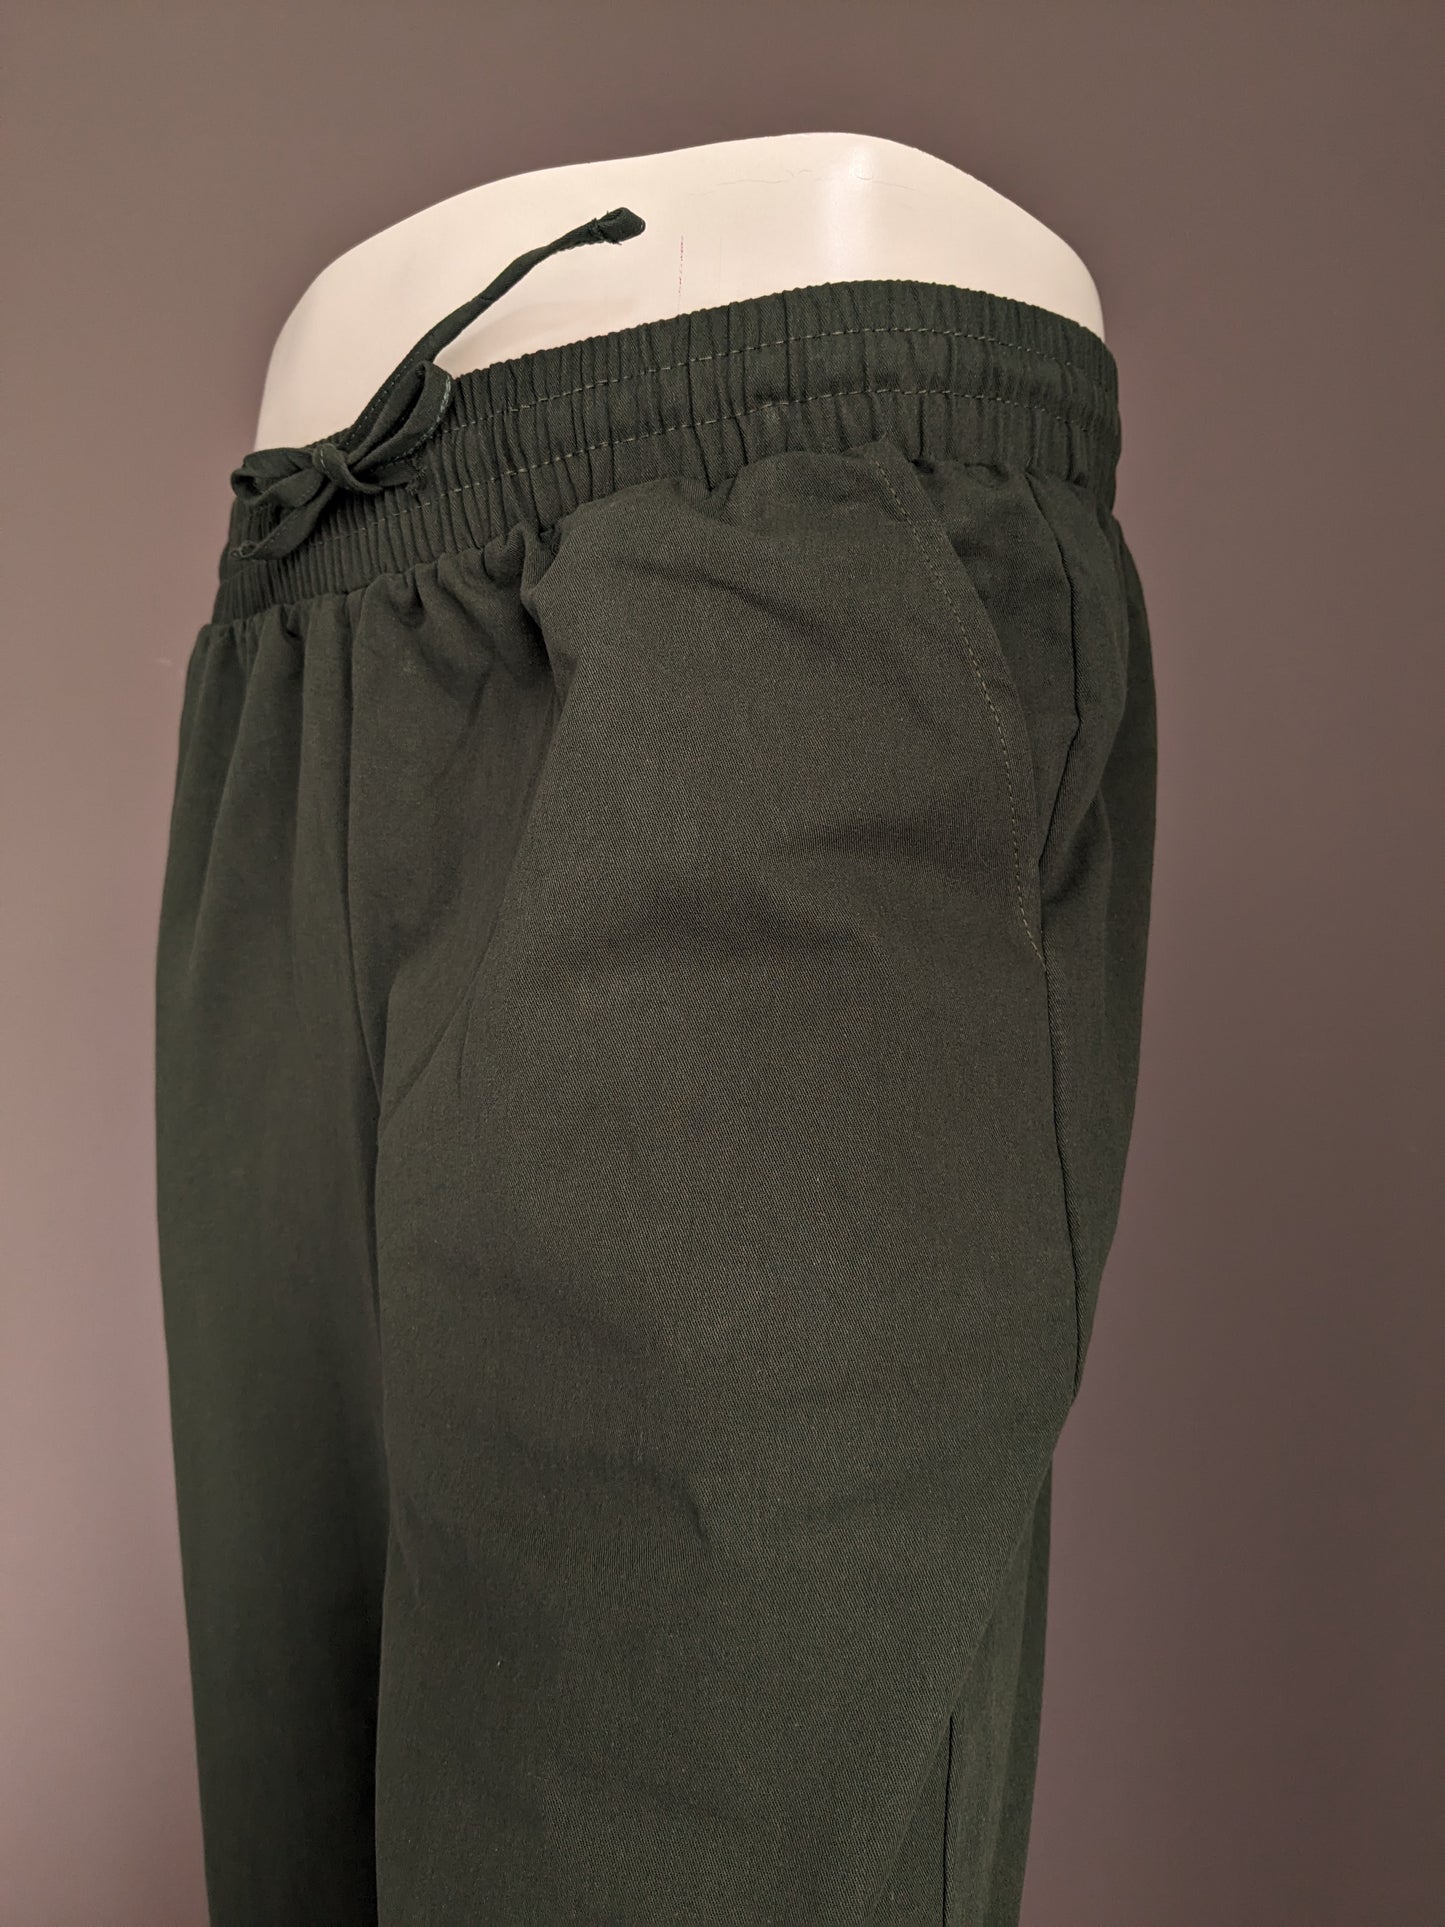 Merkloos Casual broek met elastische band. Groen gekleurd. Maat M